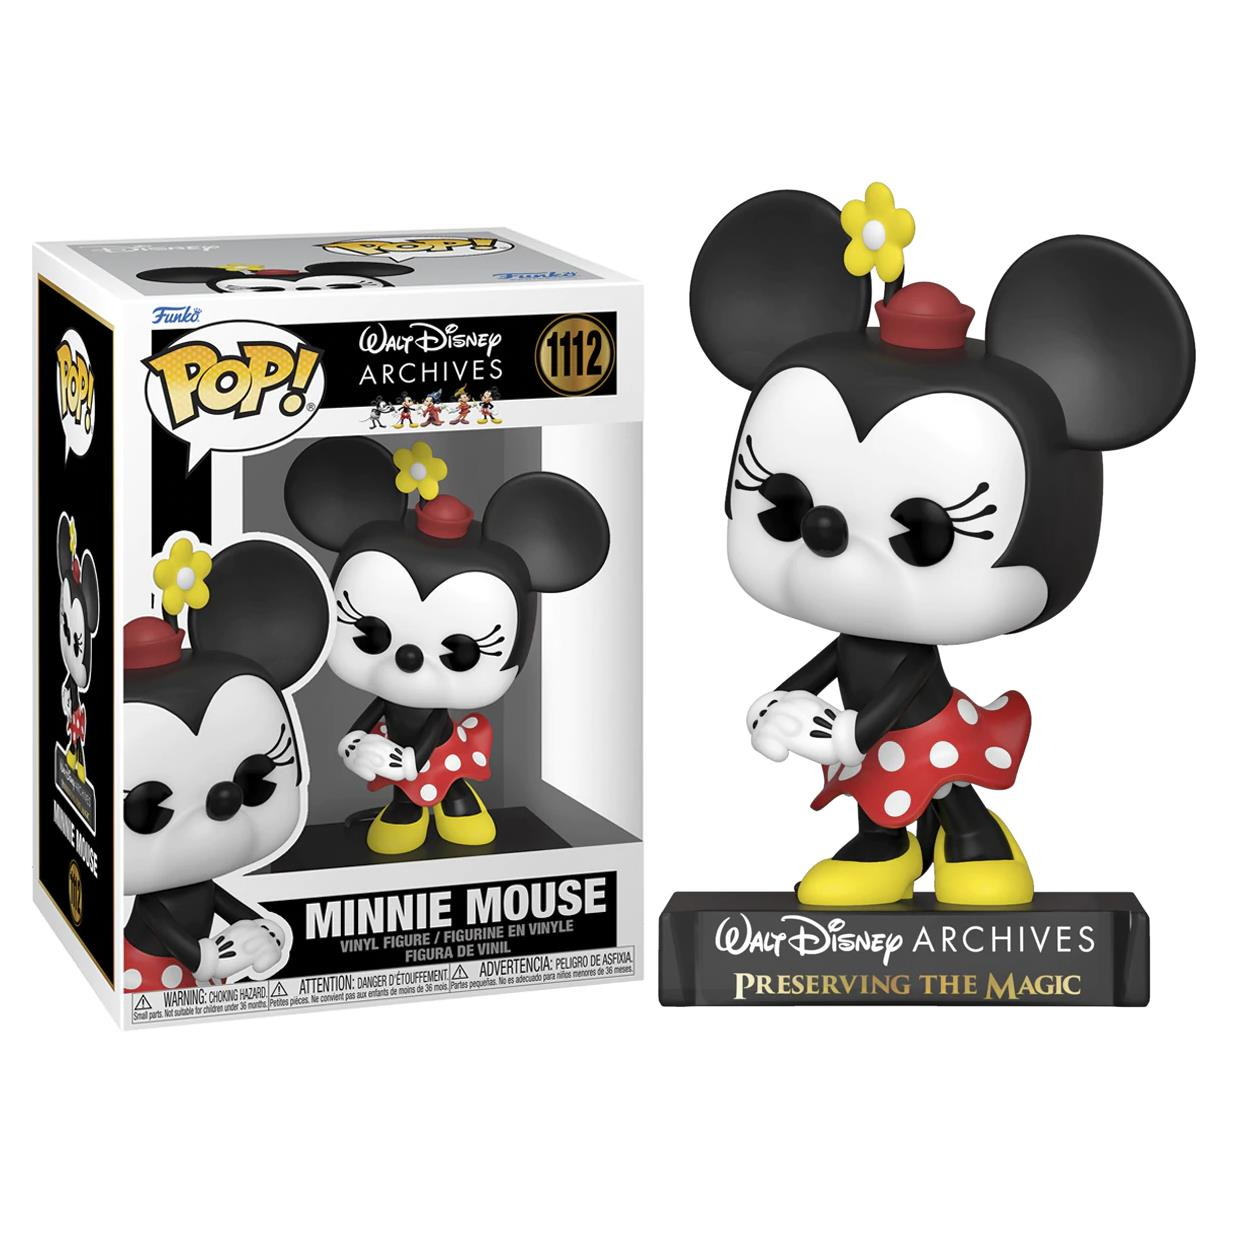 POP - - Mouse Minnie Archives (2013) Disney